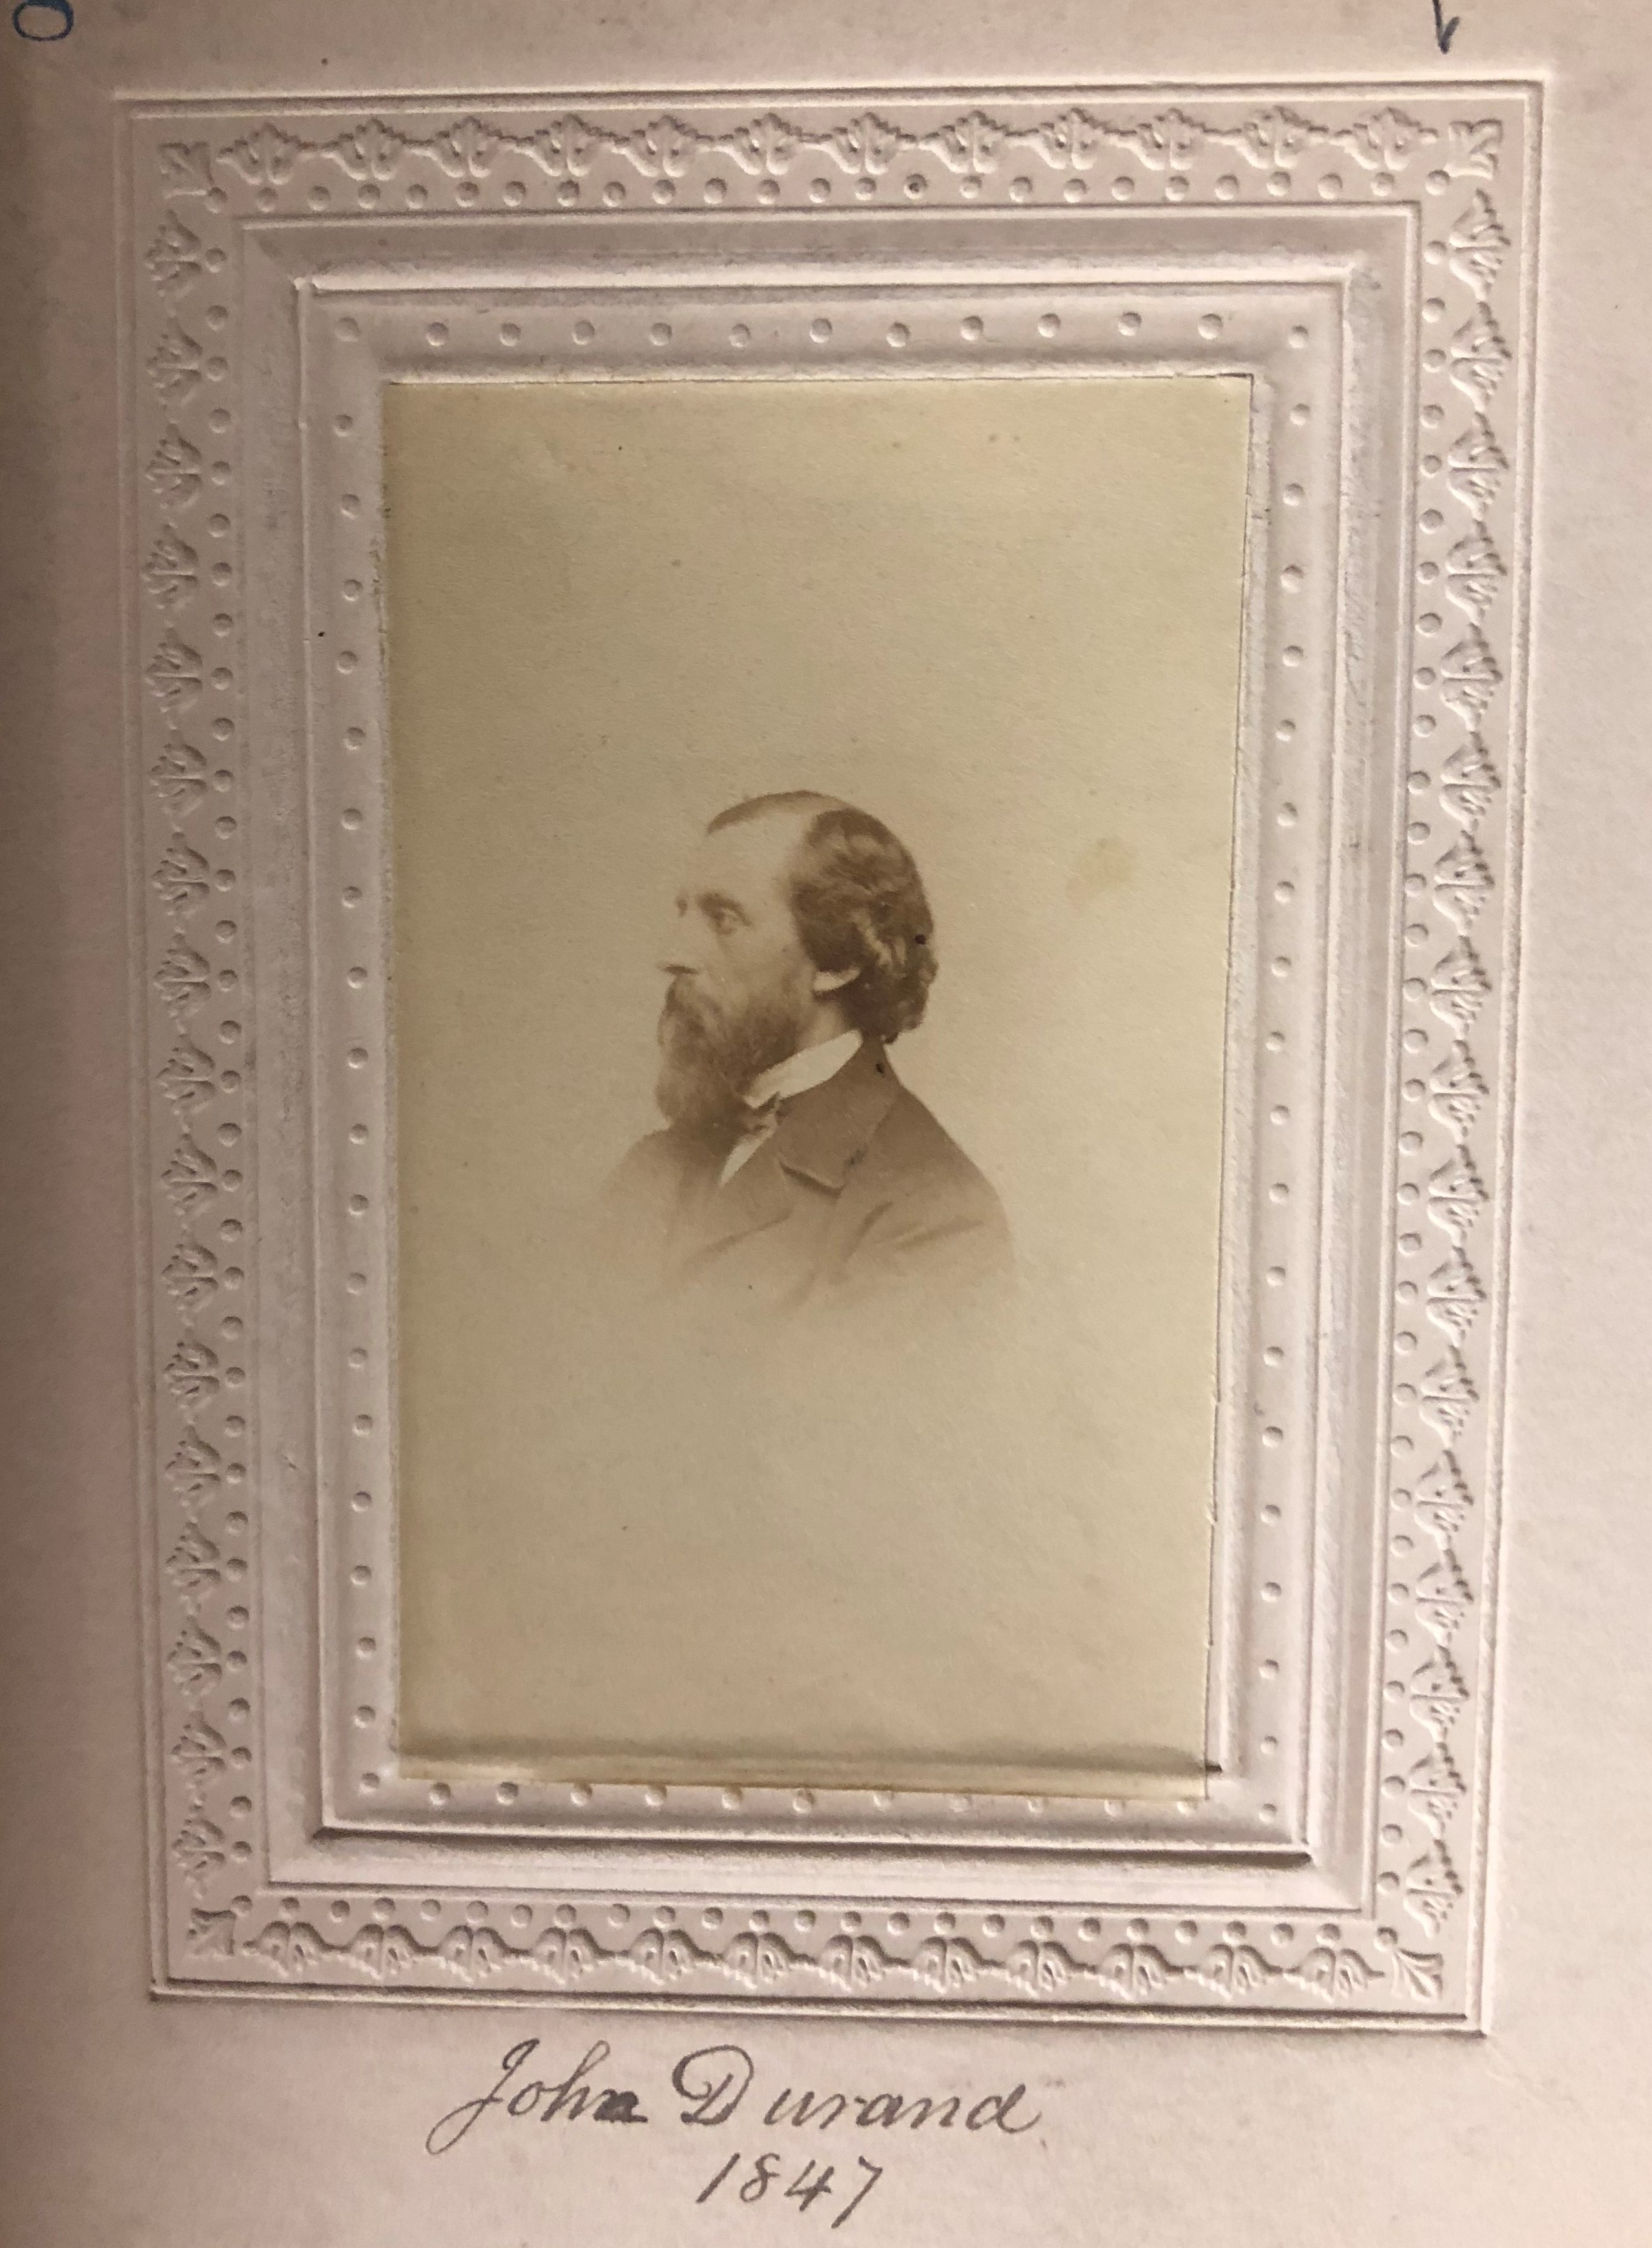 Member portrait of John Durand